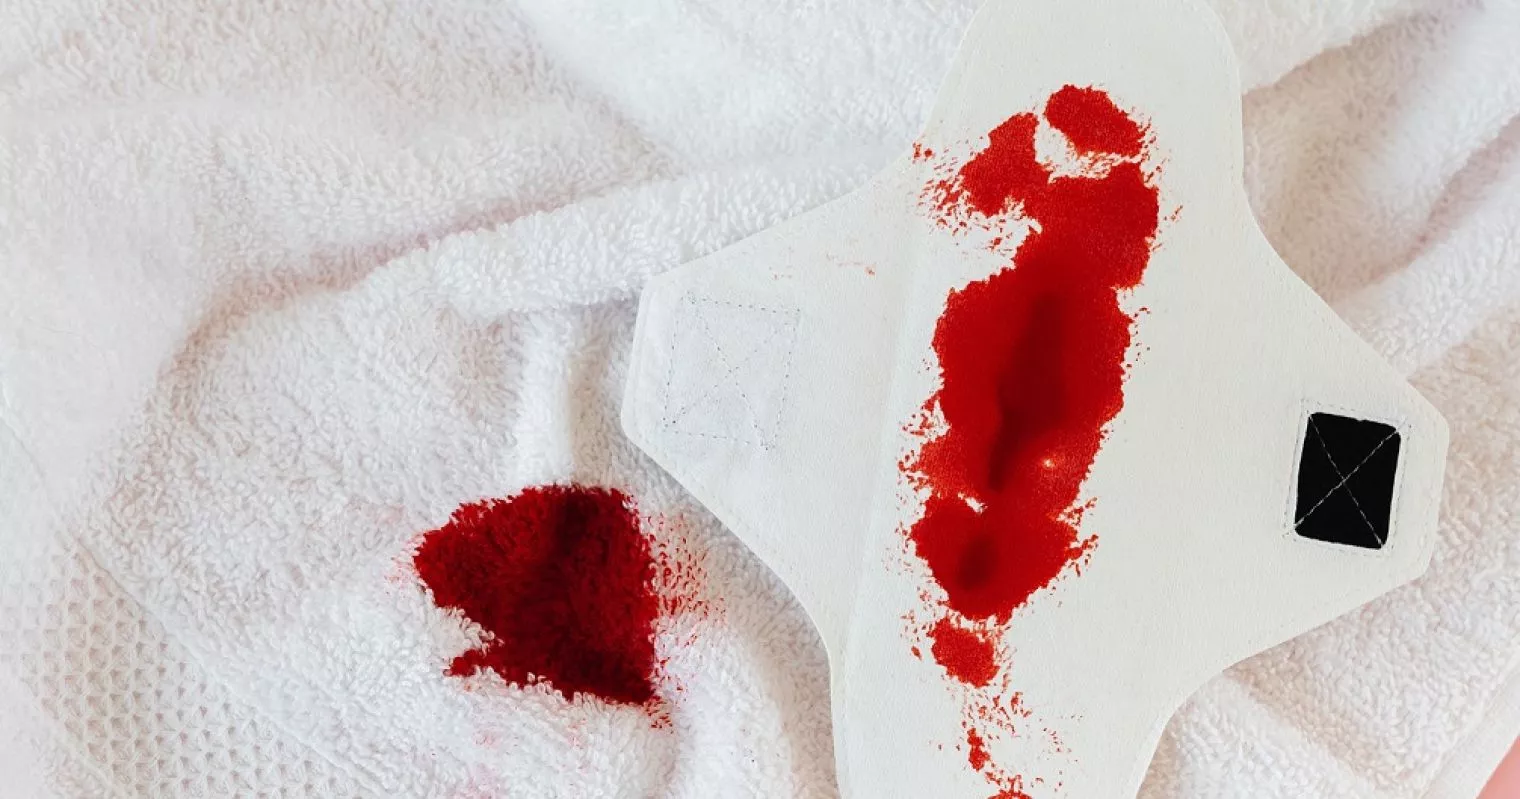 Darah Menstruasi Menggumpal, Apa Maksudnya?